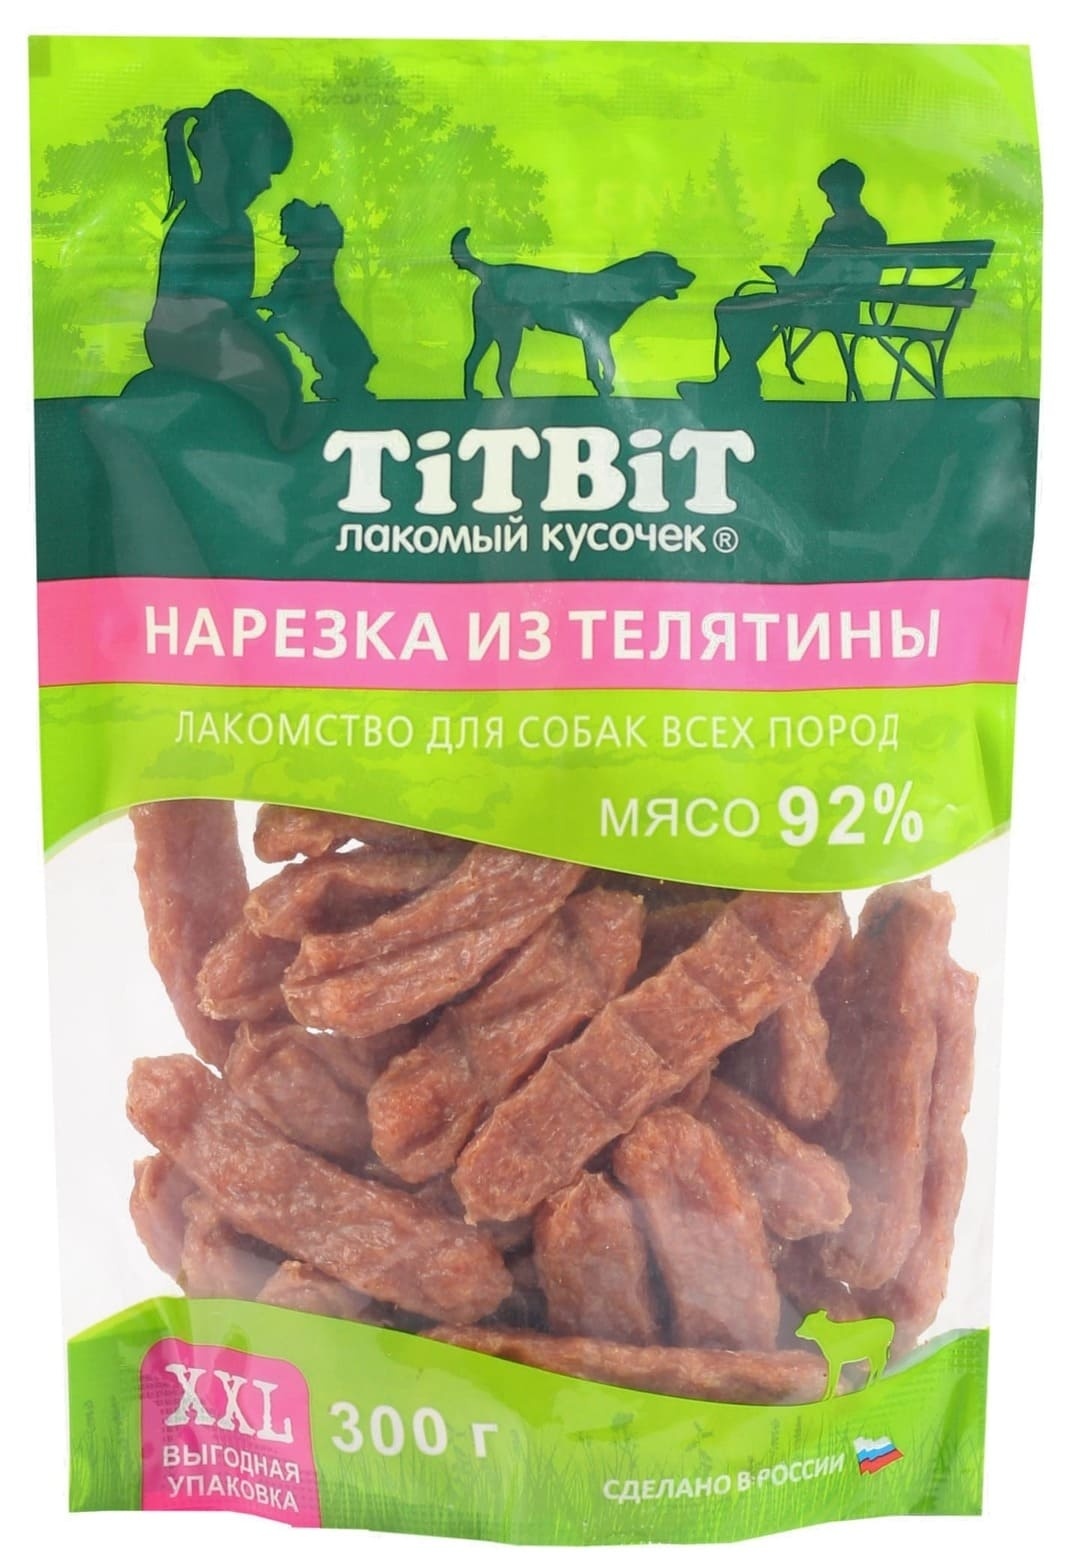 TiTBiT TiTBiT нарезка из телятины для собак всех пород, выгодная упаковка XXL (300 г) titbit titbit палочки колбасные для собак всех пород выгодная упаковка xxl 550 г